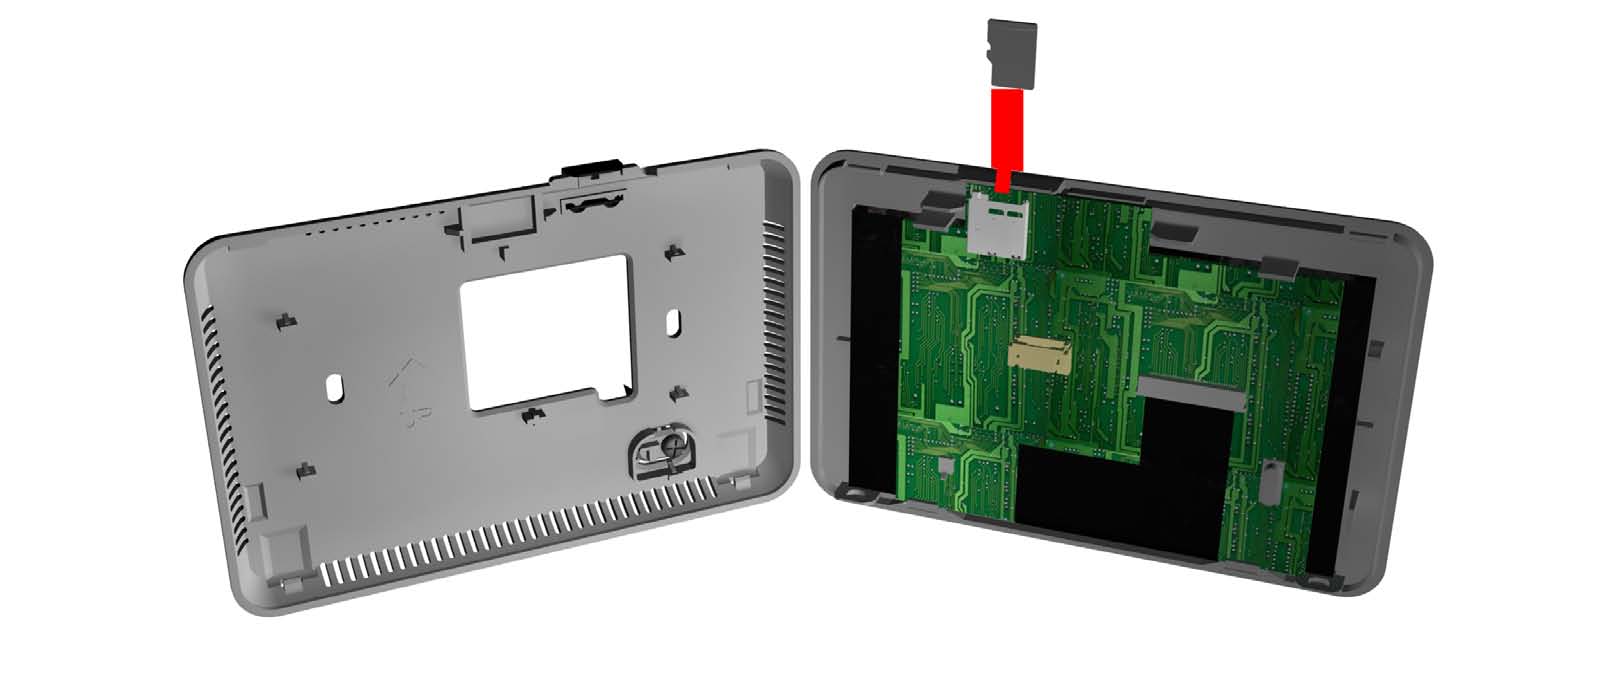 MikroSD-Karte So entfernen/ersetzen Sie die MikroSD (mit Deckel) 1.